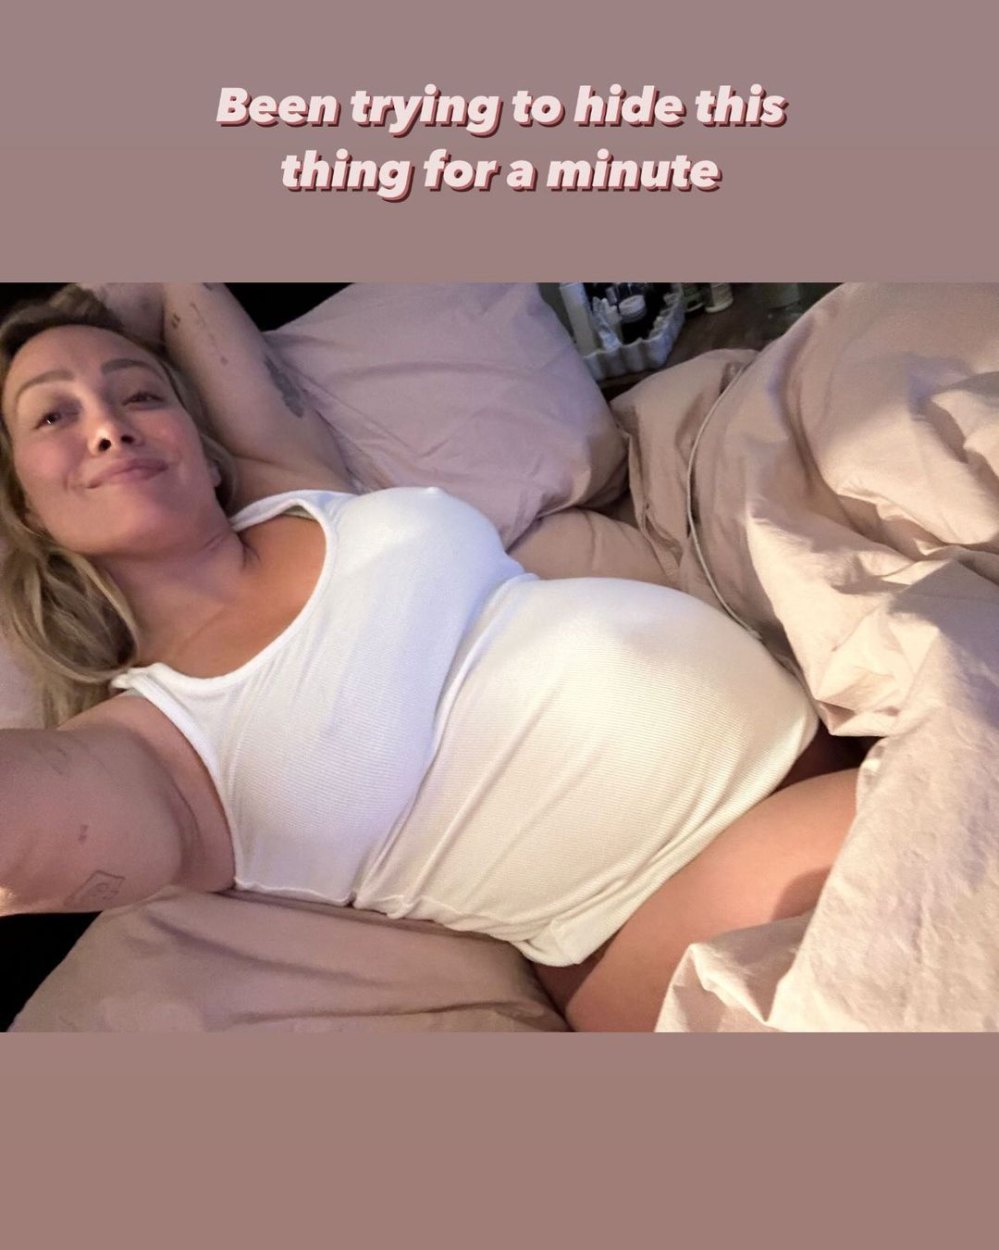 Die schwangere Hilary Duff scherzt, sie habe „eine Minute lang versucht, ihren Babybauch zu verbergen“